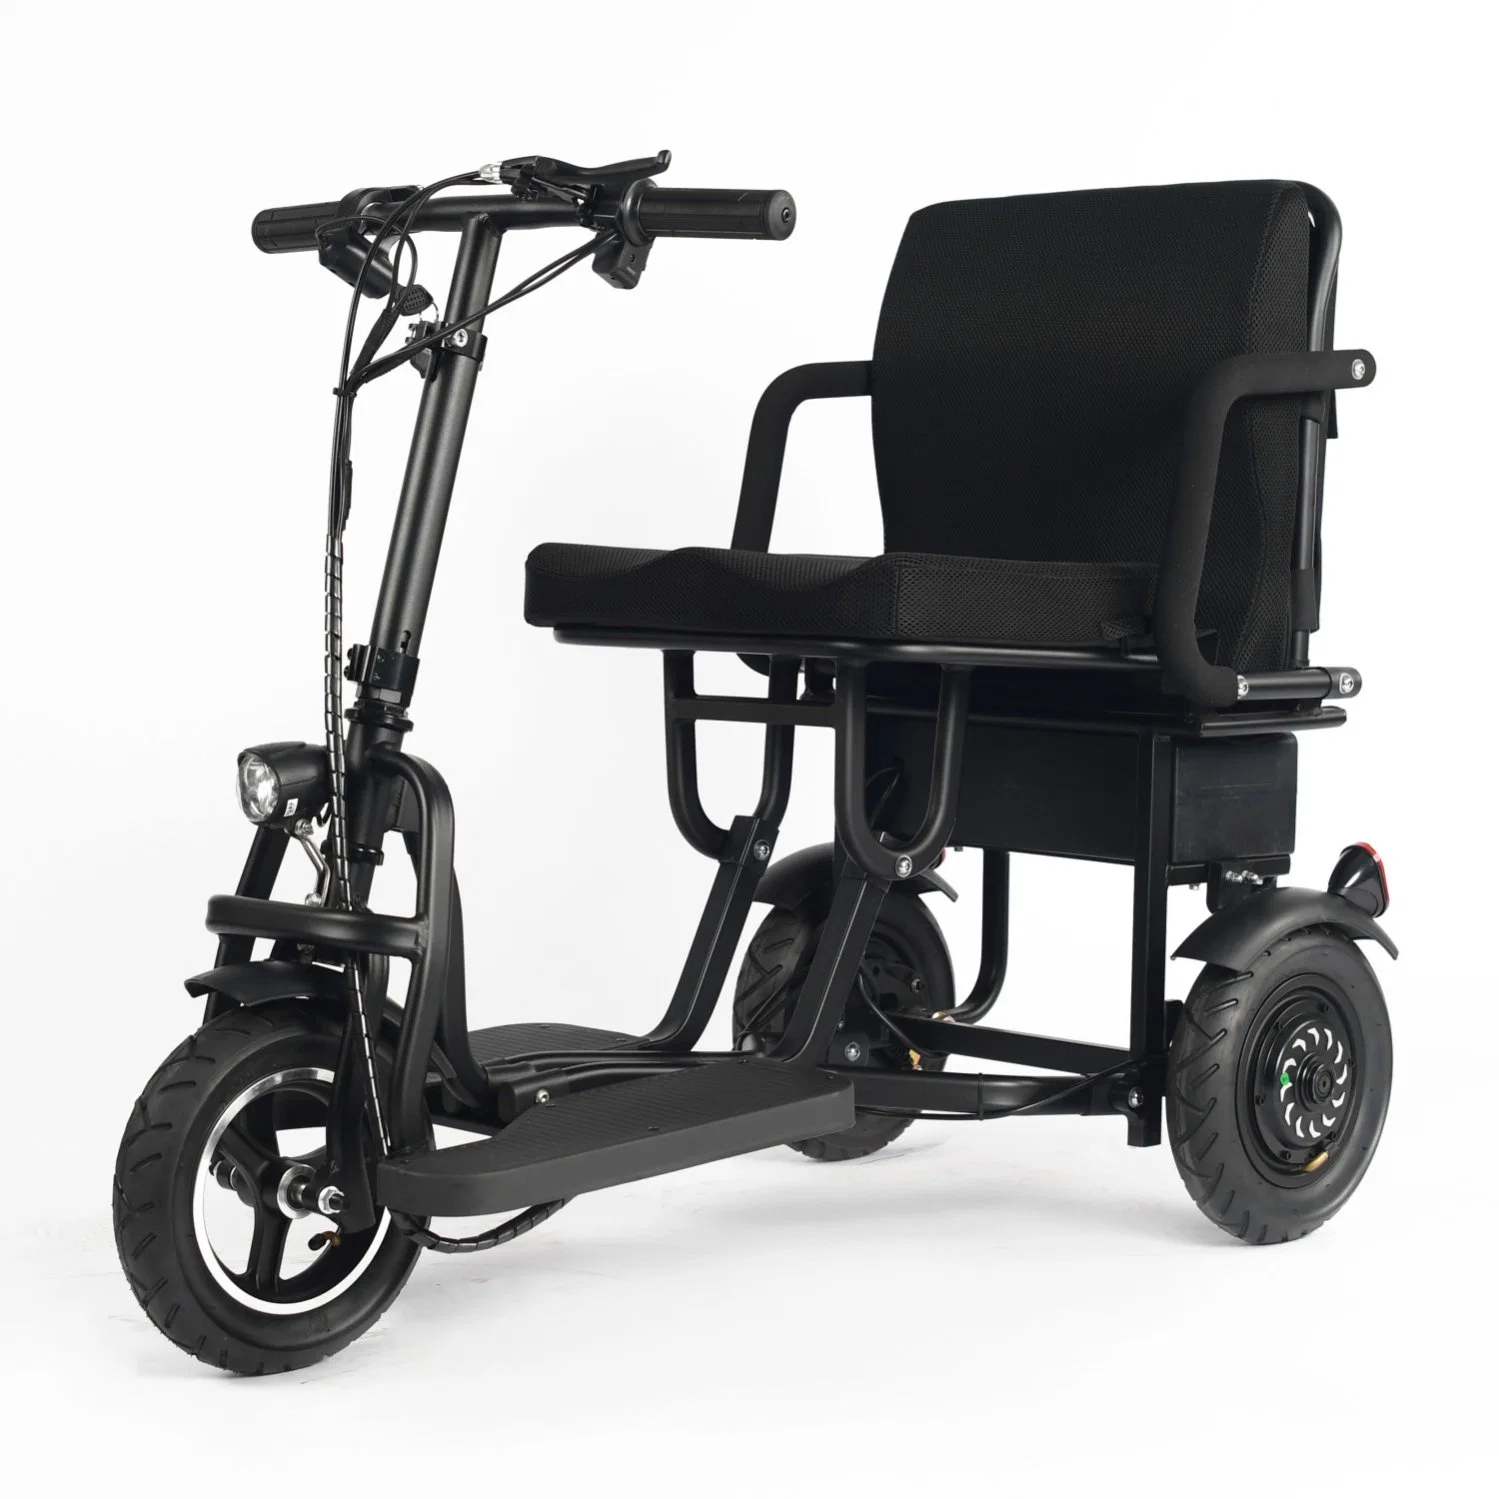 Scooter portátil dobrável para bicicletas com 3 rodas e elétrico, com banco para Pessoas com deficiência